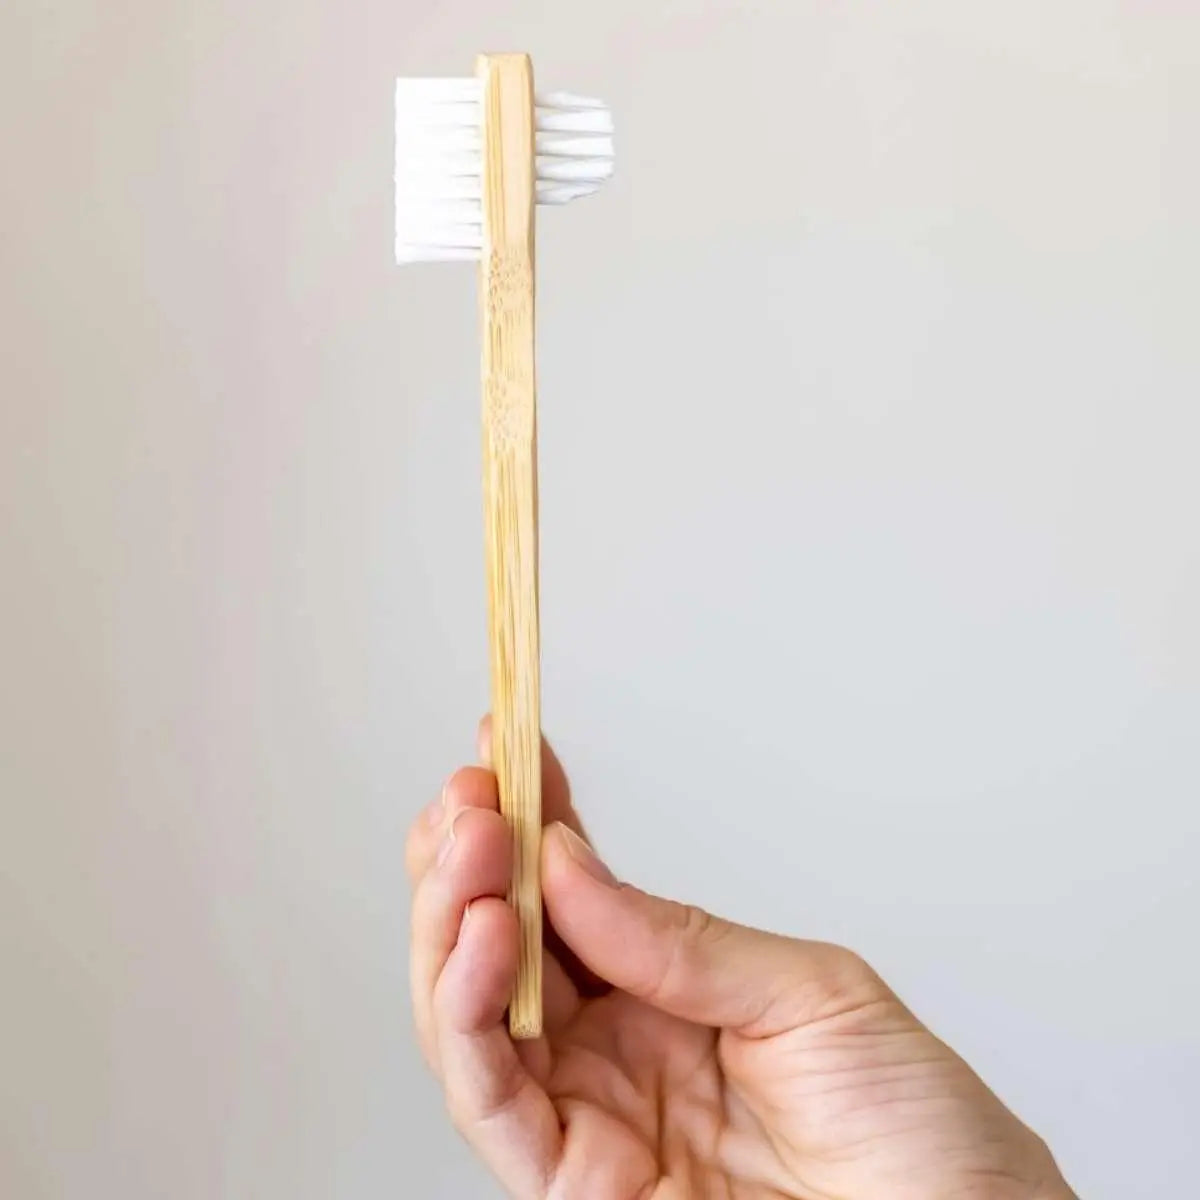 bamboo brush held in hand